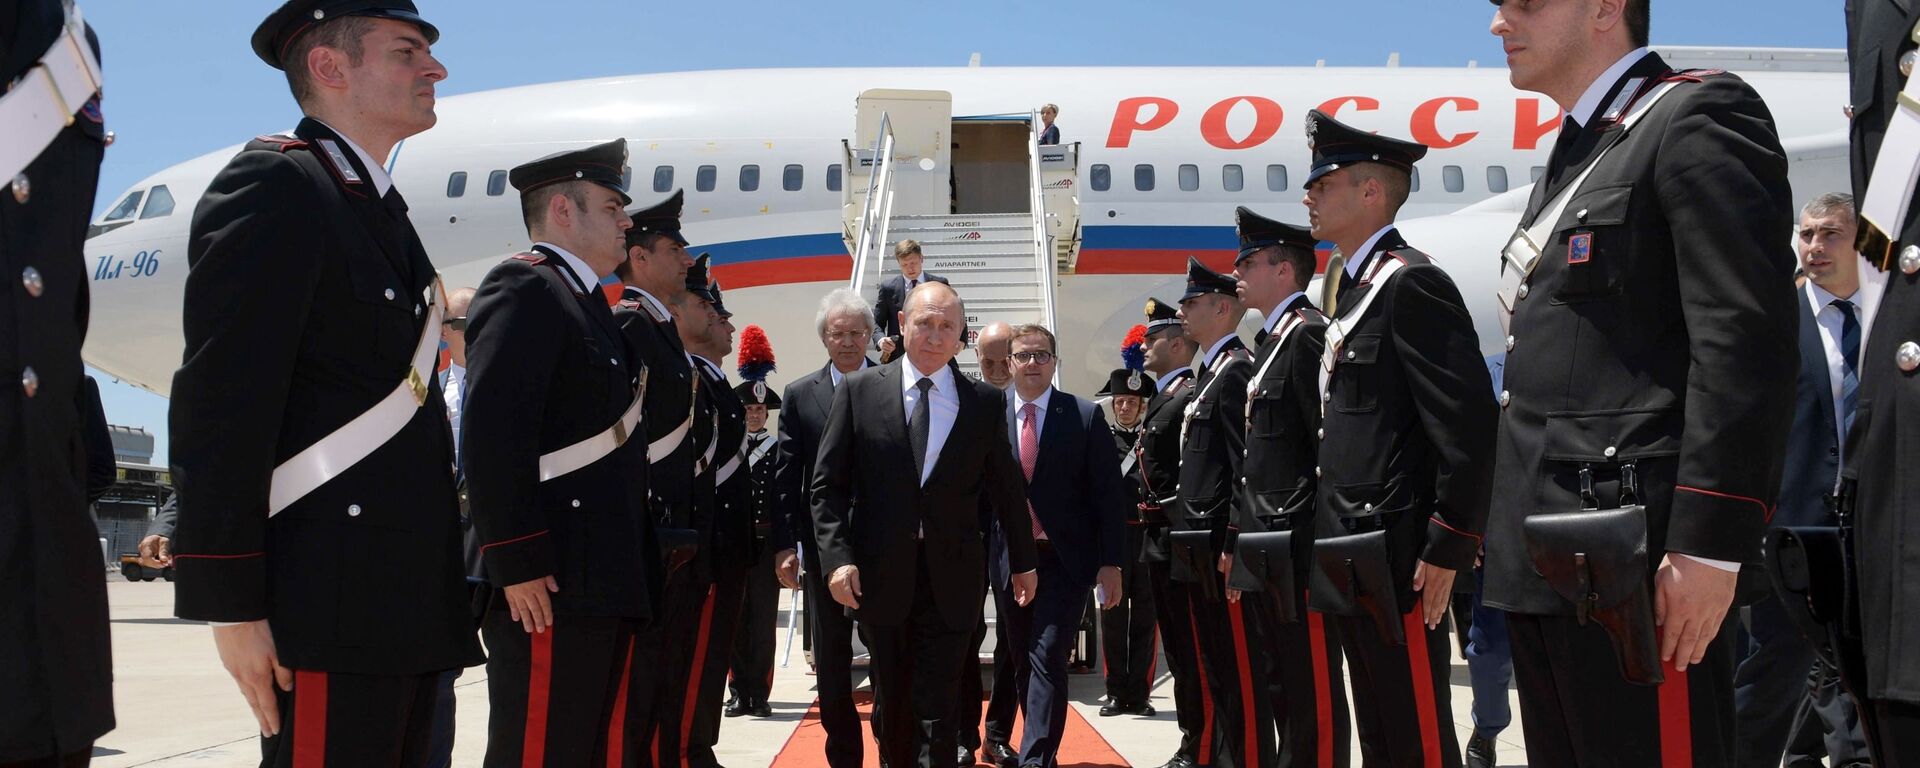 Президент России Владимир Путин выходит из самолета по прибытии в международный аэропорт Рима - Sputnik Таджикистан, 1920, 30.11.2021